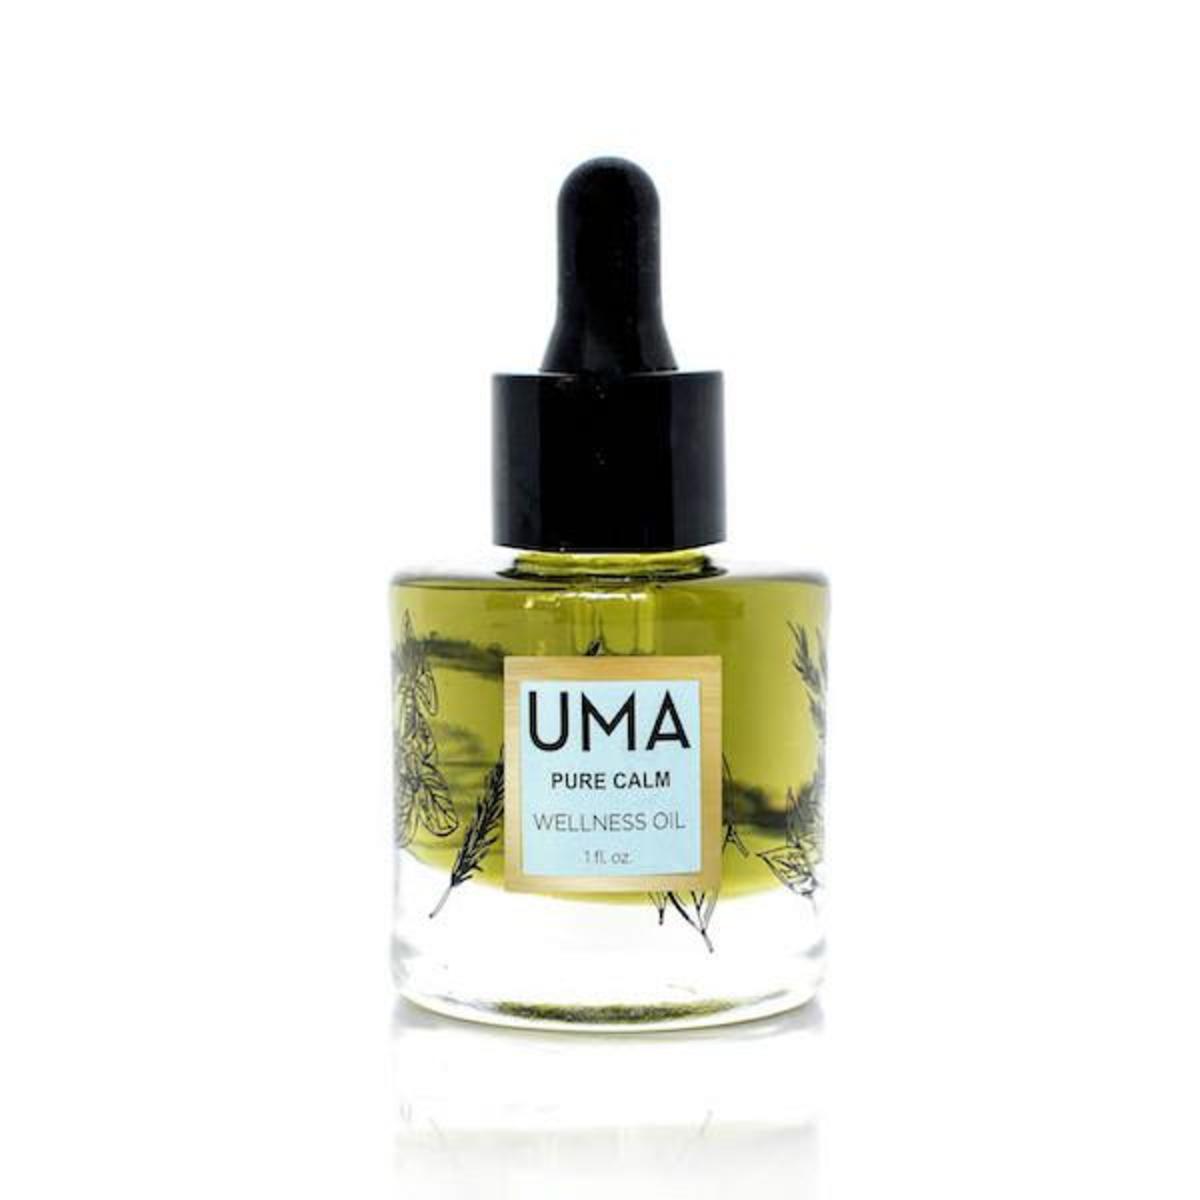 UMA Pure Calm Wellness Oil